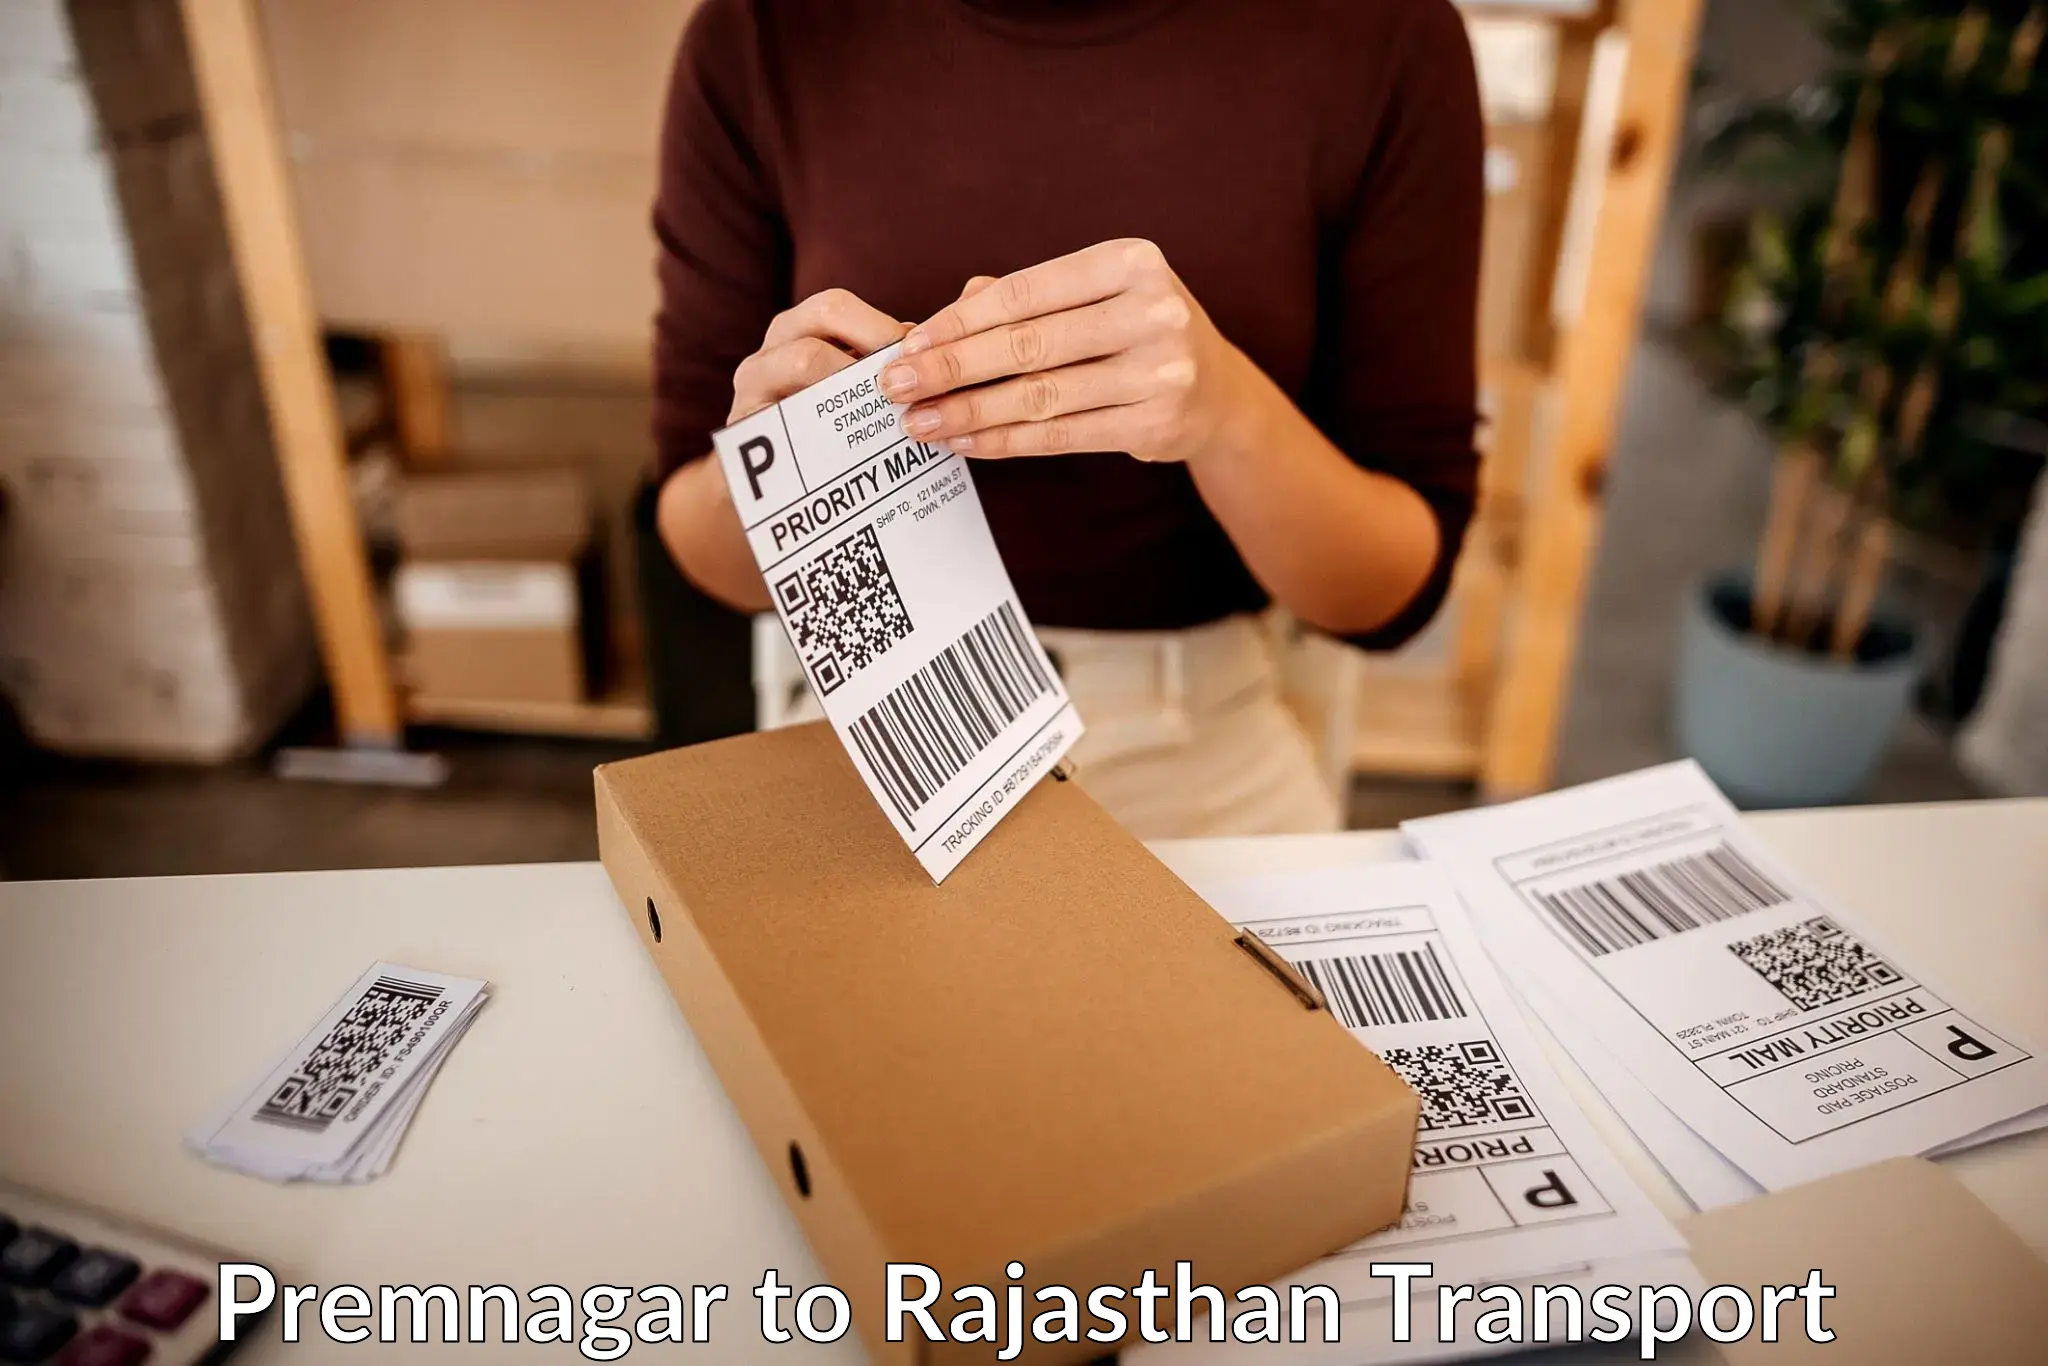 Cargo train transport services Premnagar to Pratapgarh Rajasthan